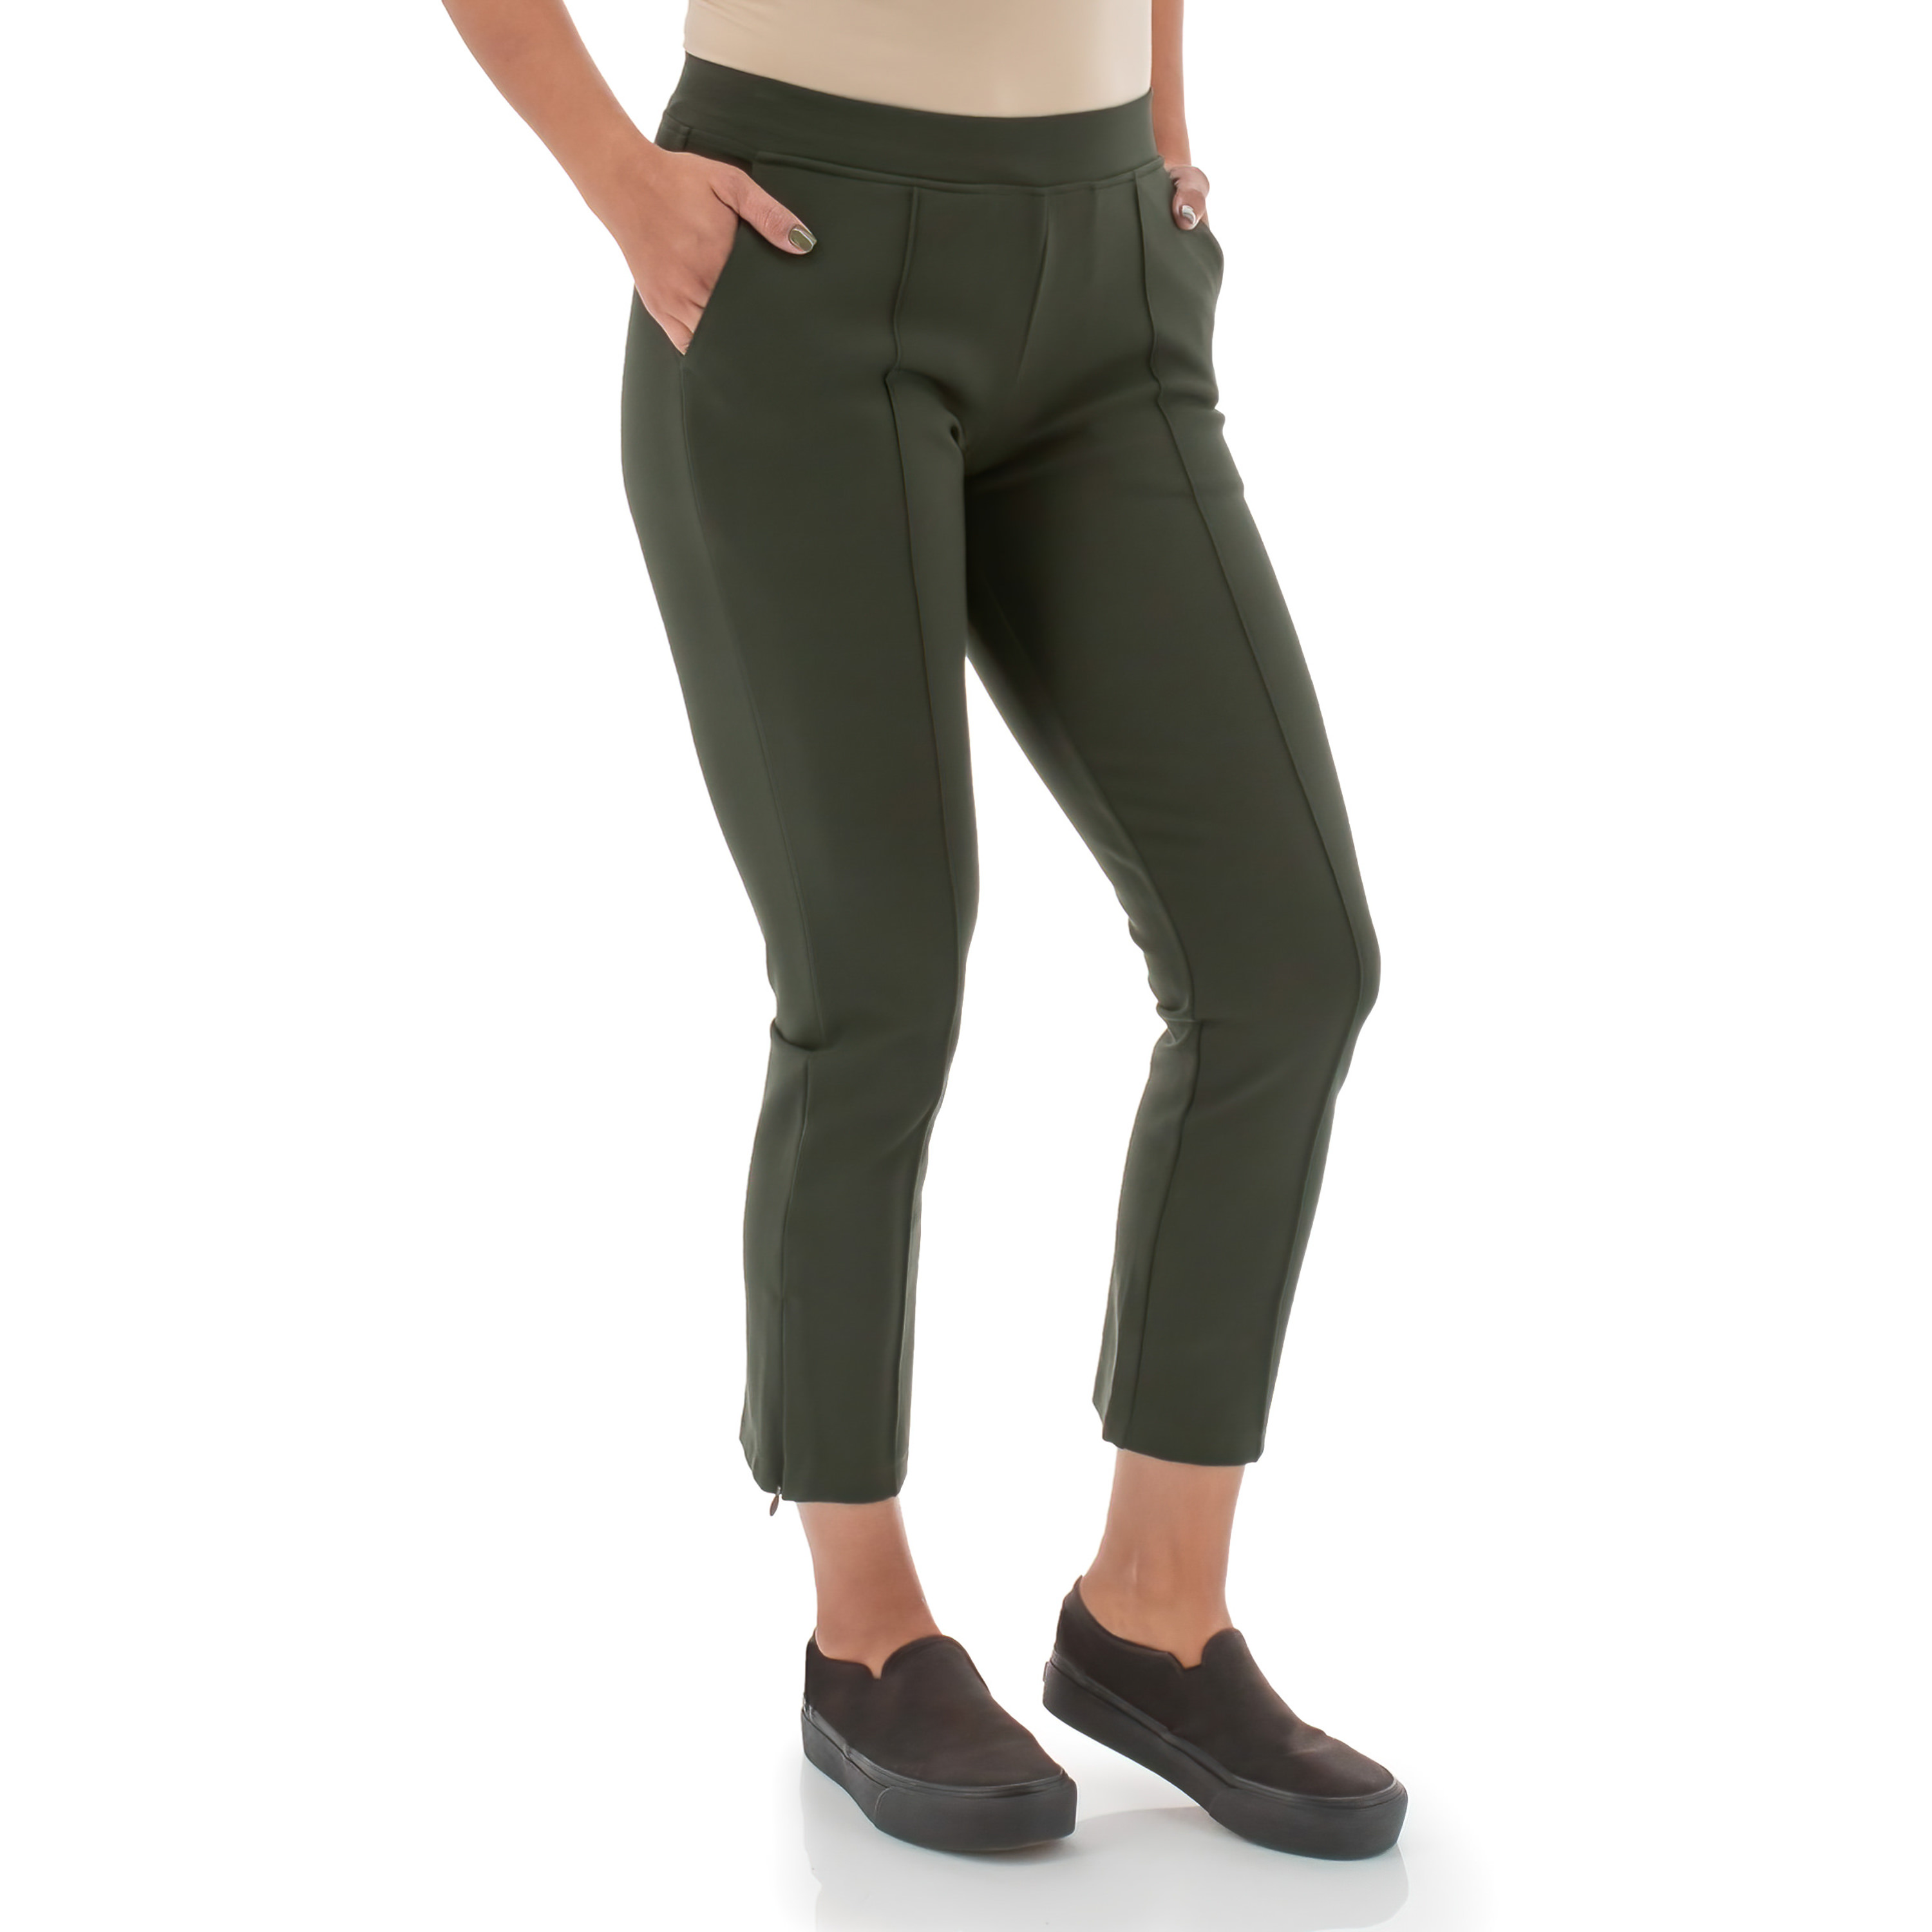 Women's Eco-Friendly Capris & Crop Pants